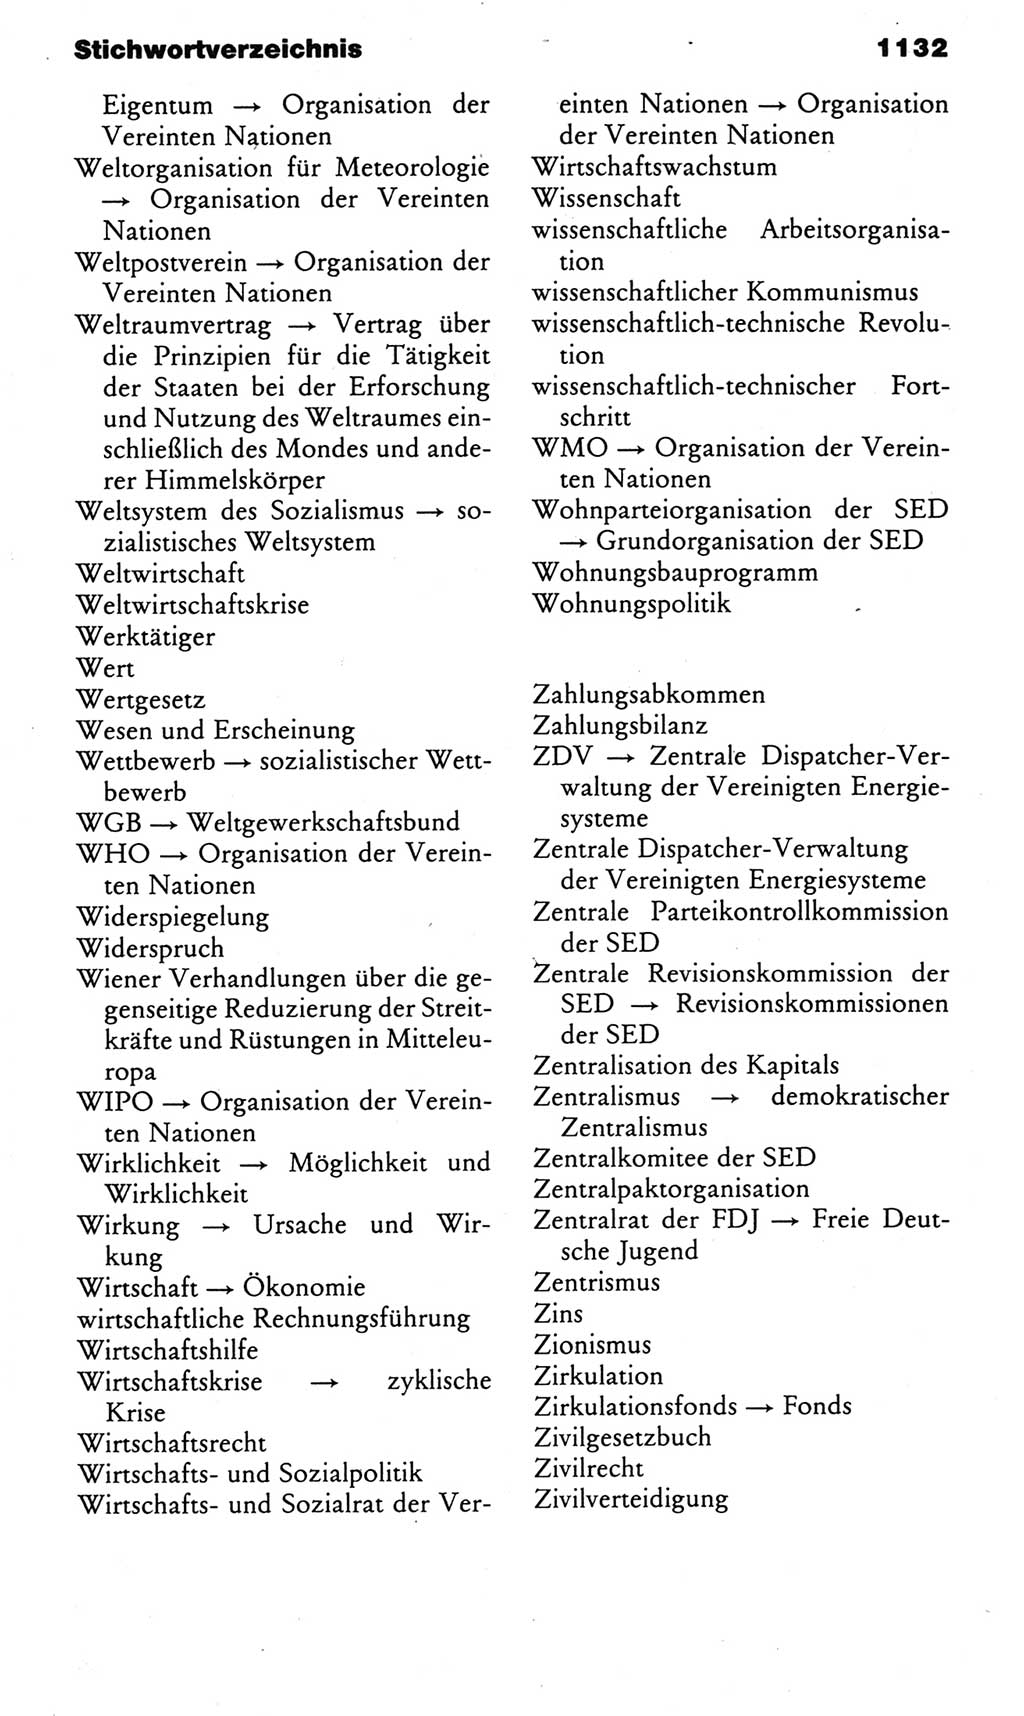 Kleines politisches Wörterbuch [Deutsche Demokratische Republik (DDR)] 1983, Seite 1132 (Kl. pol. Wb. DDR 1983, S. 1132)